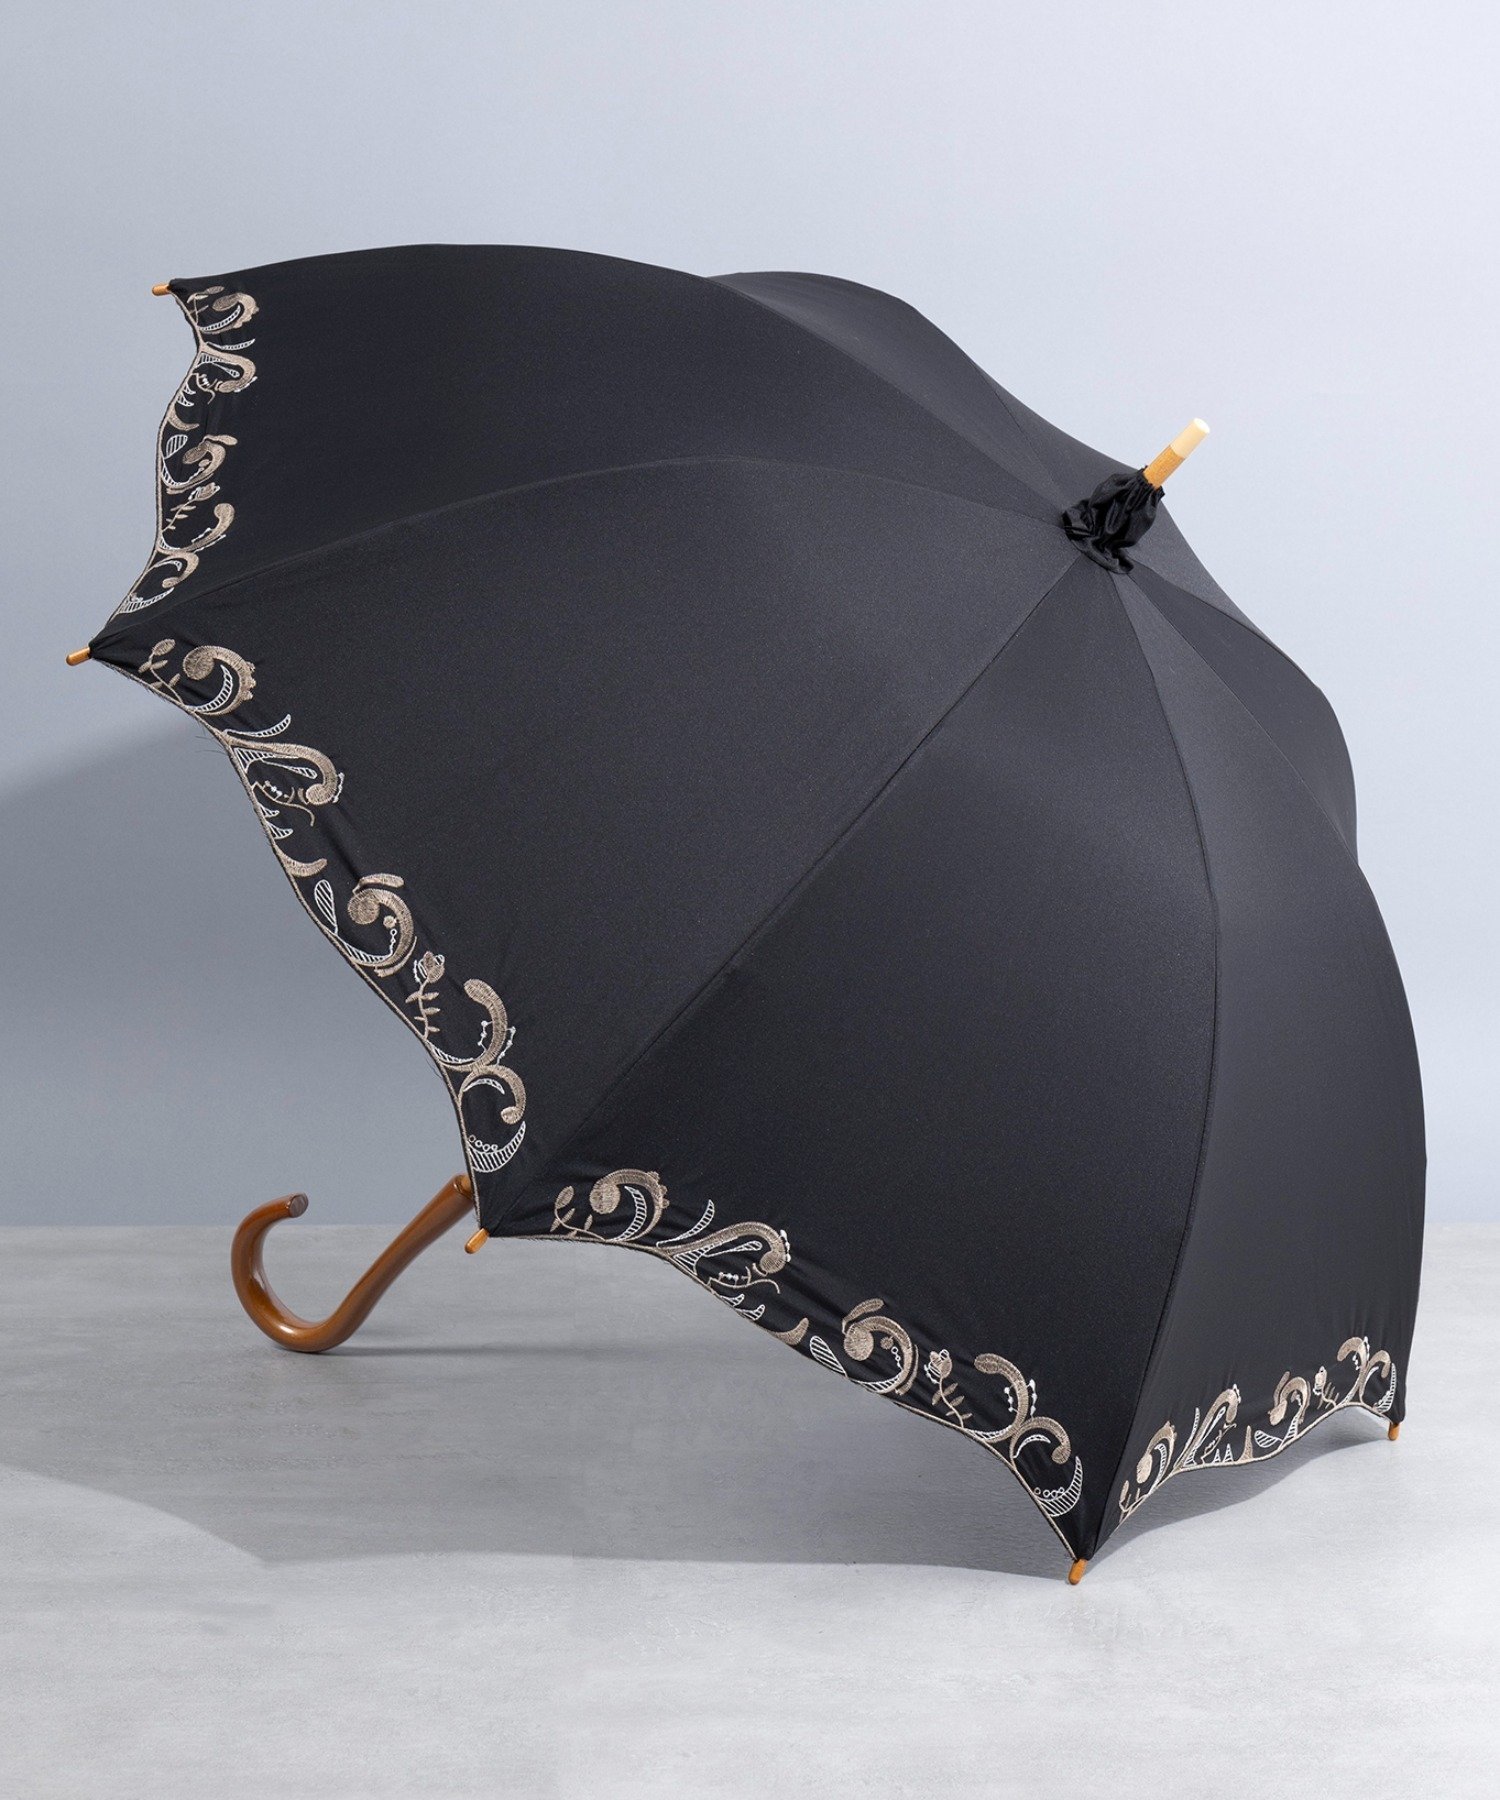 SETUP7（セットアップセブン）SETUP7/(U)刺繍デザイン UVカット 晴雨兼用 超撥水 かわず張り 長傘 日傘 紫外線対策 遮光 熱中症対策エレガントな刺繍の縁取りが上品な印象に仕上げてくれる日傘。これからの季節の紫外線対策にマストハブなアイテムは、お洋服に馴染みやすいデザインをセレクトするとサッと使えて汎用度もアップ。木目調の持ち手が、ナチュラルテイストのアクセントに◎。型番：223502897-BK-FRE KZ1323【採寸】サイズ長さ親骨FREE83.0cm55cm商品のサイズについて【商品詳細】中国素材：傘生地の組成:ポリエステル100%サイズ：FREE※画面上と実物では多少色具合が異なって見える場合もございます。ご了承ください。商品のカラーについて 【予約商品について】 ※「先行予約販売中」「予約販売中」をご注文の際は予約商品についてをご確認ください。SETUP7（セットアップセブン）SETUP7/(U)刺繍デザイン UVカット 晴雨兼用 超撥水 かわず張り 長傘 日傘 紫外線対策 遮光 熱中症対策エレガントな刺繍の縁取りが上品な印象に仕上げてくれる日傘。これからの季節の紫外線対策にマストハブなアイテムは、お洋服に馴染みやすいデザインをセレクトするとサッと使えて汎用度もアップ。木目調の持ち手が、ナチュラルテイストのアクセントに◎。型番：223502897-BK-FRE KZ1323【採寸】サイズ長さ親骨FREE83.0cm55cm商品のサイズについて【商品詳細】中国素材：傘生地の組成:ポリエステル100%サイズ：FREE※画面上と実物では多少色具合が異なって見える場合もございます。ご了承ください。商品のカラーについて 【予約商品について】 ※「先行予約販売中」「予約販売中」をご注文の際は予約商品についてをご確認ください。■重要なお知らせ※ 当店では、ギフト配送サービス及びラッピングサービスを行っておりません。ご注文者様とお届け先が違う場合でも、タグ（値札）付「納品書 兼 返品連絡票」同梱の状態でお送り致しますのでご了承ください。 ラッピング・ギフト配送について※ 2点以上ご購入の場合、全ての商品が揃い次第一括でのお届けとなります。お届け予定日の異なる商品をお買い上げの場合はご注意下さい。お急ぎの商品がございましたら分けてご購入いただきますようお願い致します。発送について ※ 買い物カートに入れるだけでは在庫確保されませんのでお早めに購入手続きをしてください。当店では在庫を複数サイトで共有しているため、同時にご注文があった場合、売切れとなってしまう事がございます。お手数ですが、ご注文後に当店からお送りする「ご注文内容の確認メール」をご確認ください。ご注文の確定について ※ Rakuten Fashionの商品ページに記載しているメーカー希望小売価格は、楽天市場「商品価格ナビ」に登録されている価格に準じています。 商品の価格についてSETUP7SETUP7の傘・長傘ファッション雑貨ご注文・お届けについて発送ガイドラッピンググッズ3,980円以上送料無料ご利用ガイド